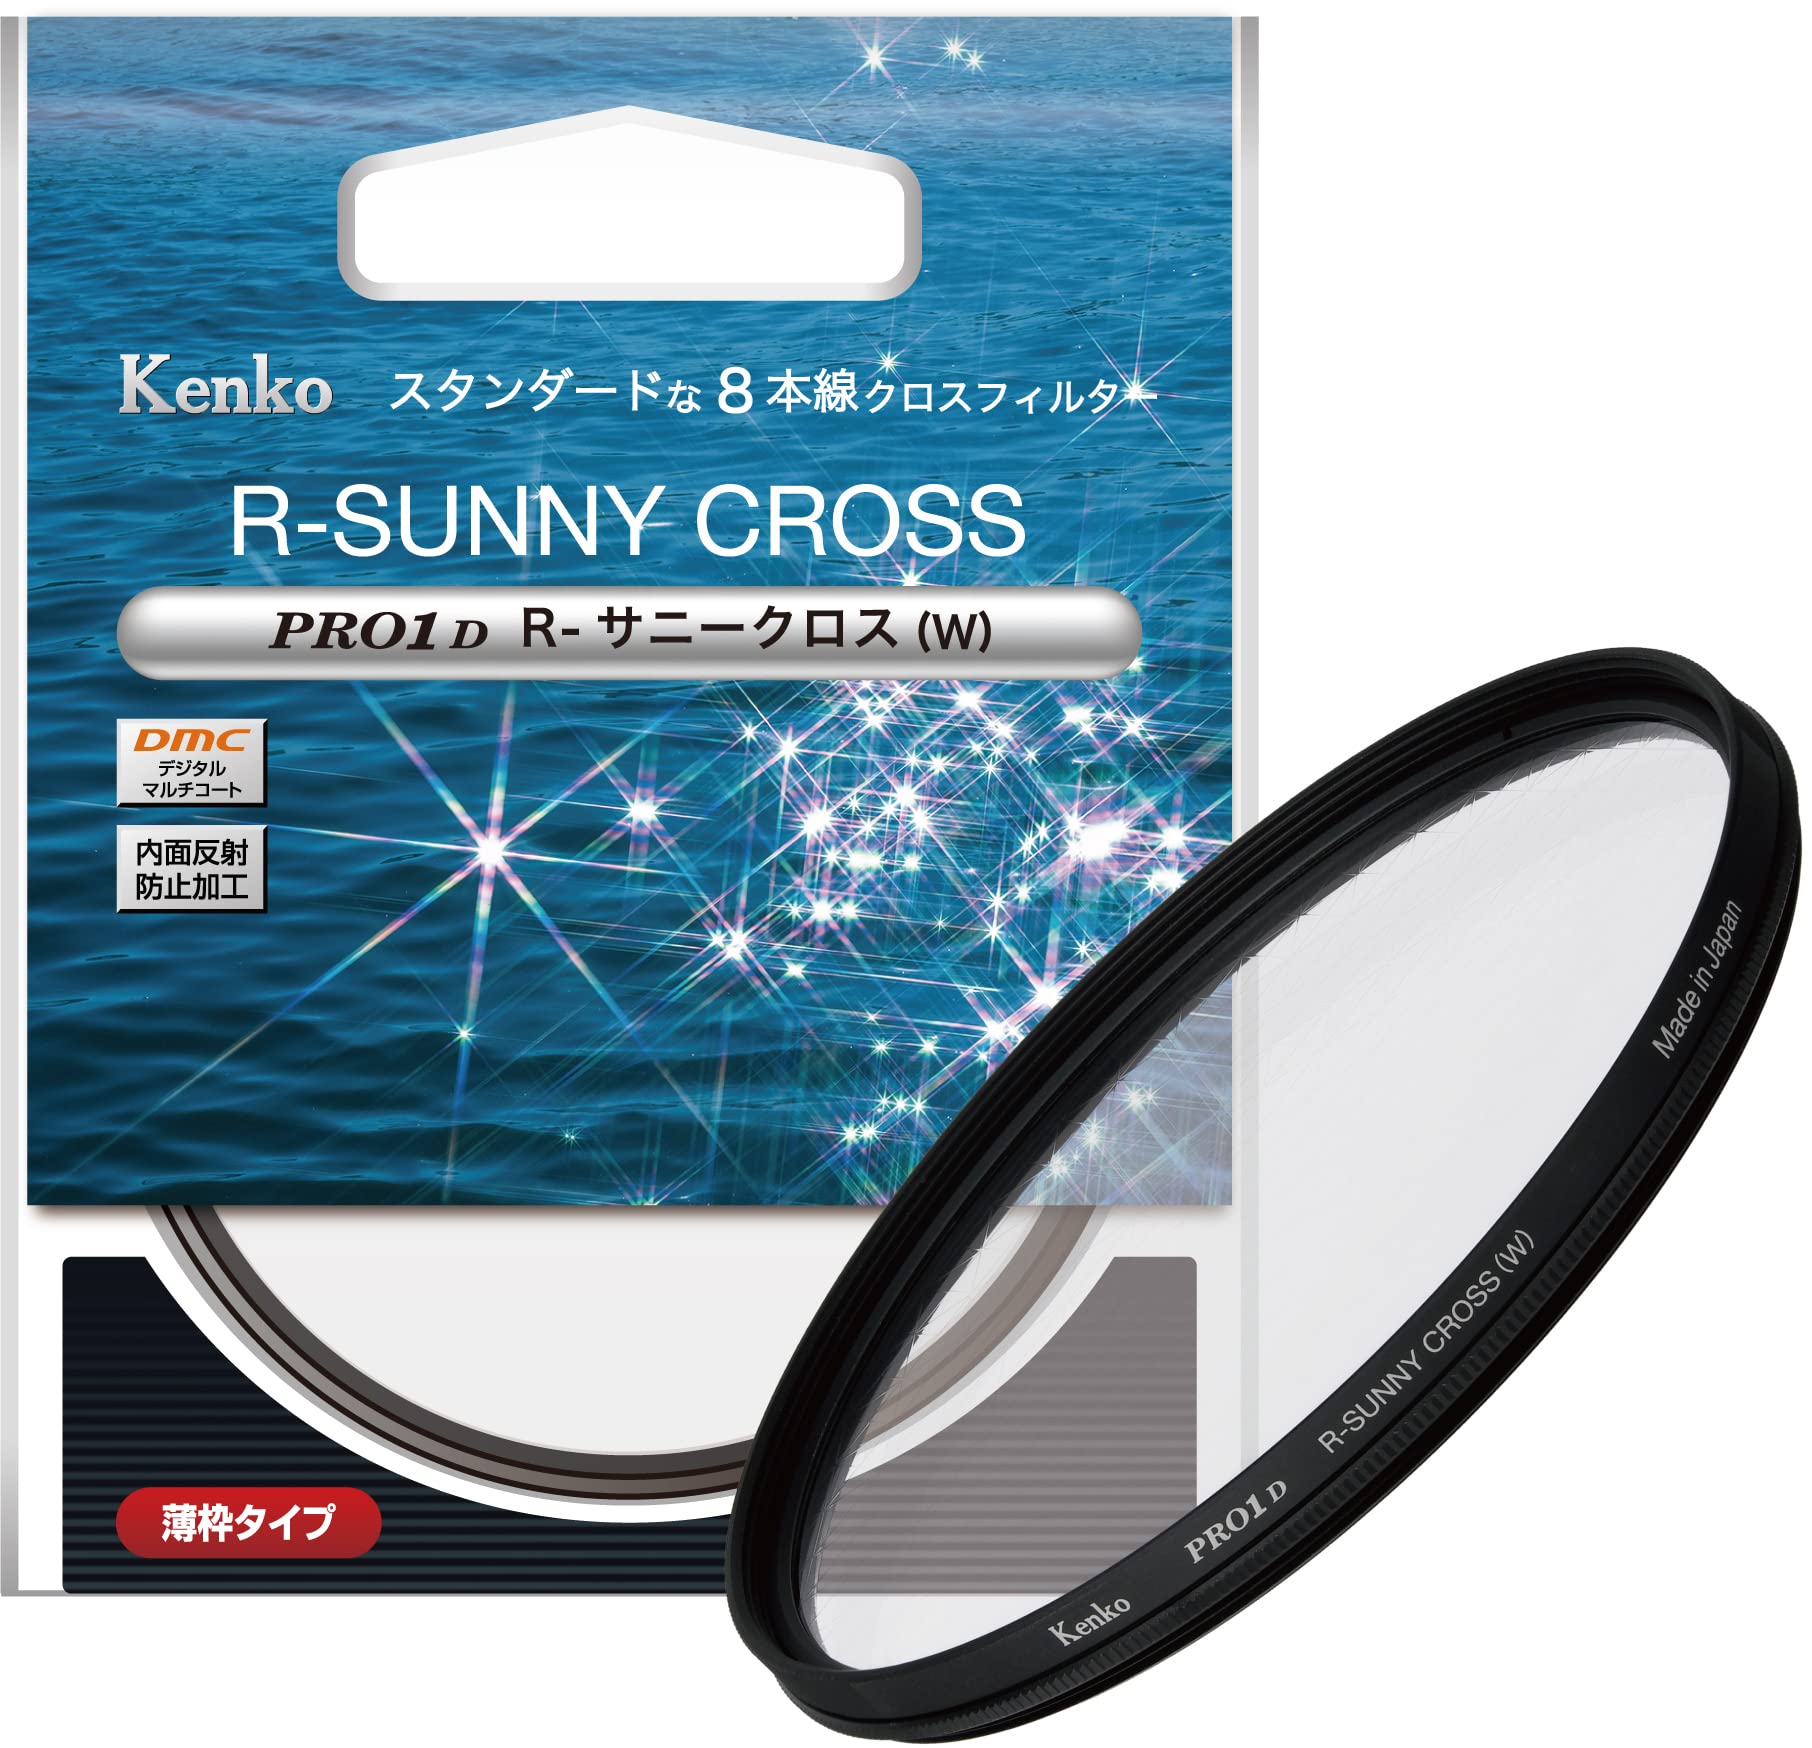 ケンコー(Kenko) クロスフィルター PRO1D R-サニークロス (W) 49mm 8本クロス効果 夜景・イルミネーション・光の演出に 薄枠 825372 特別